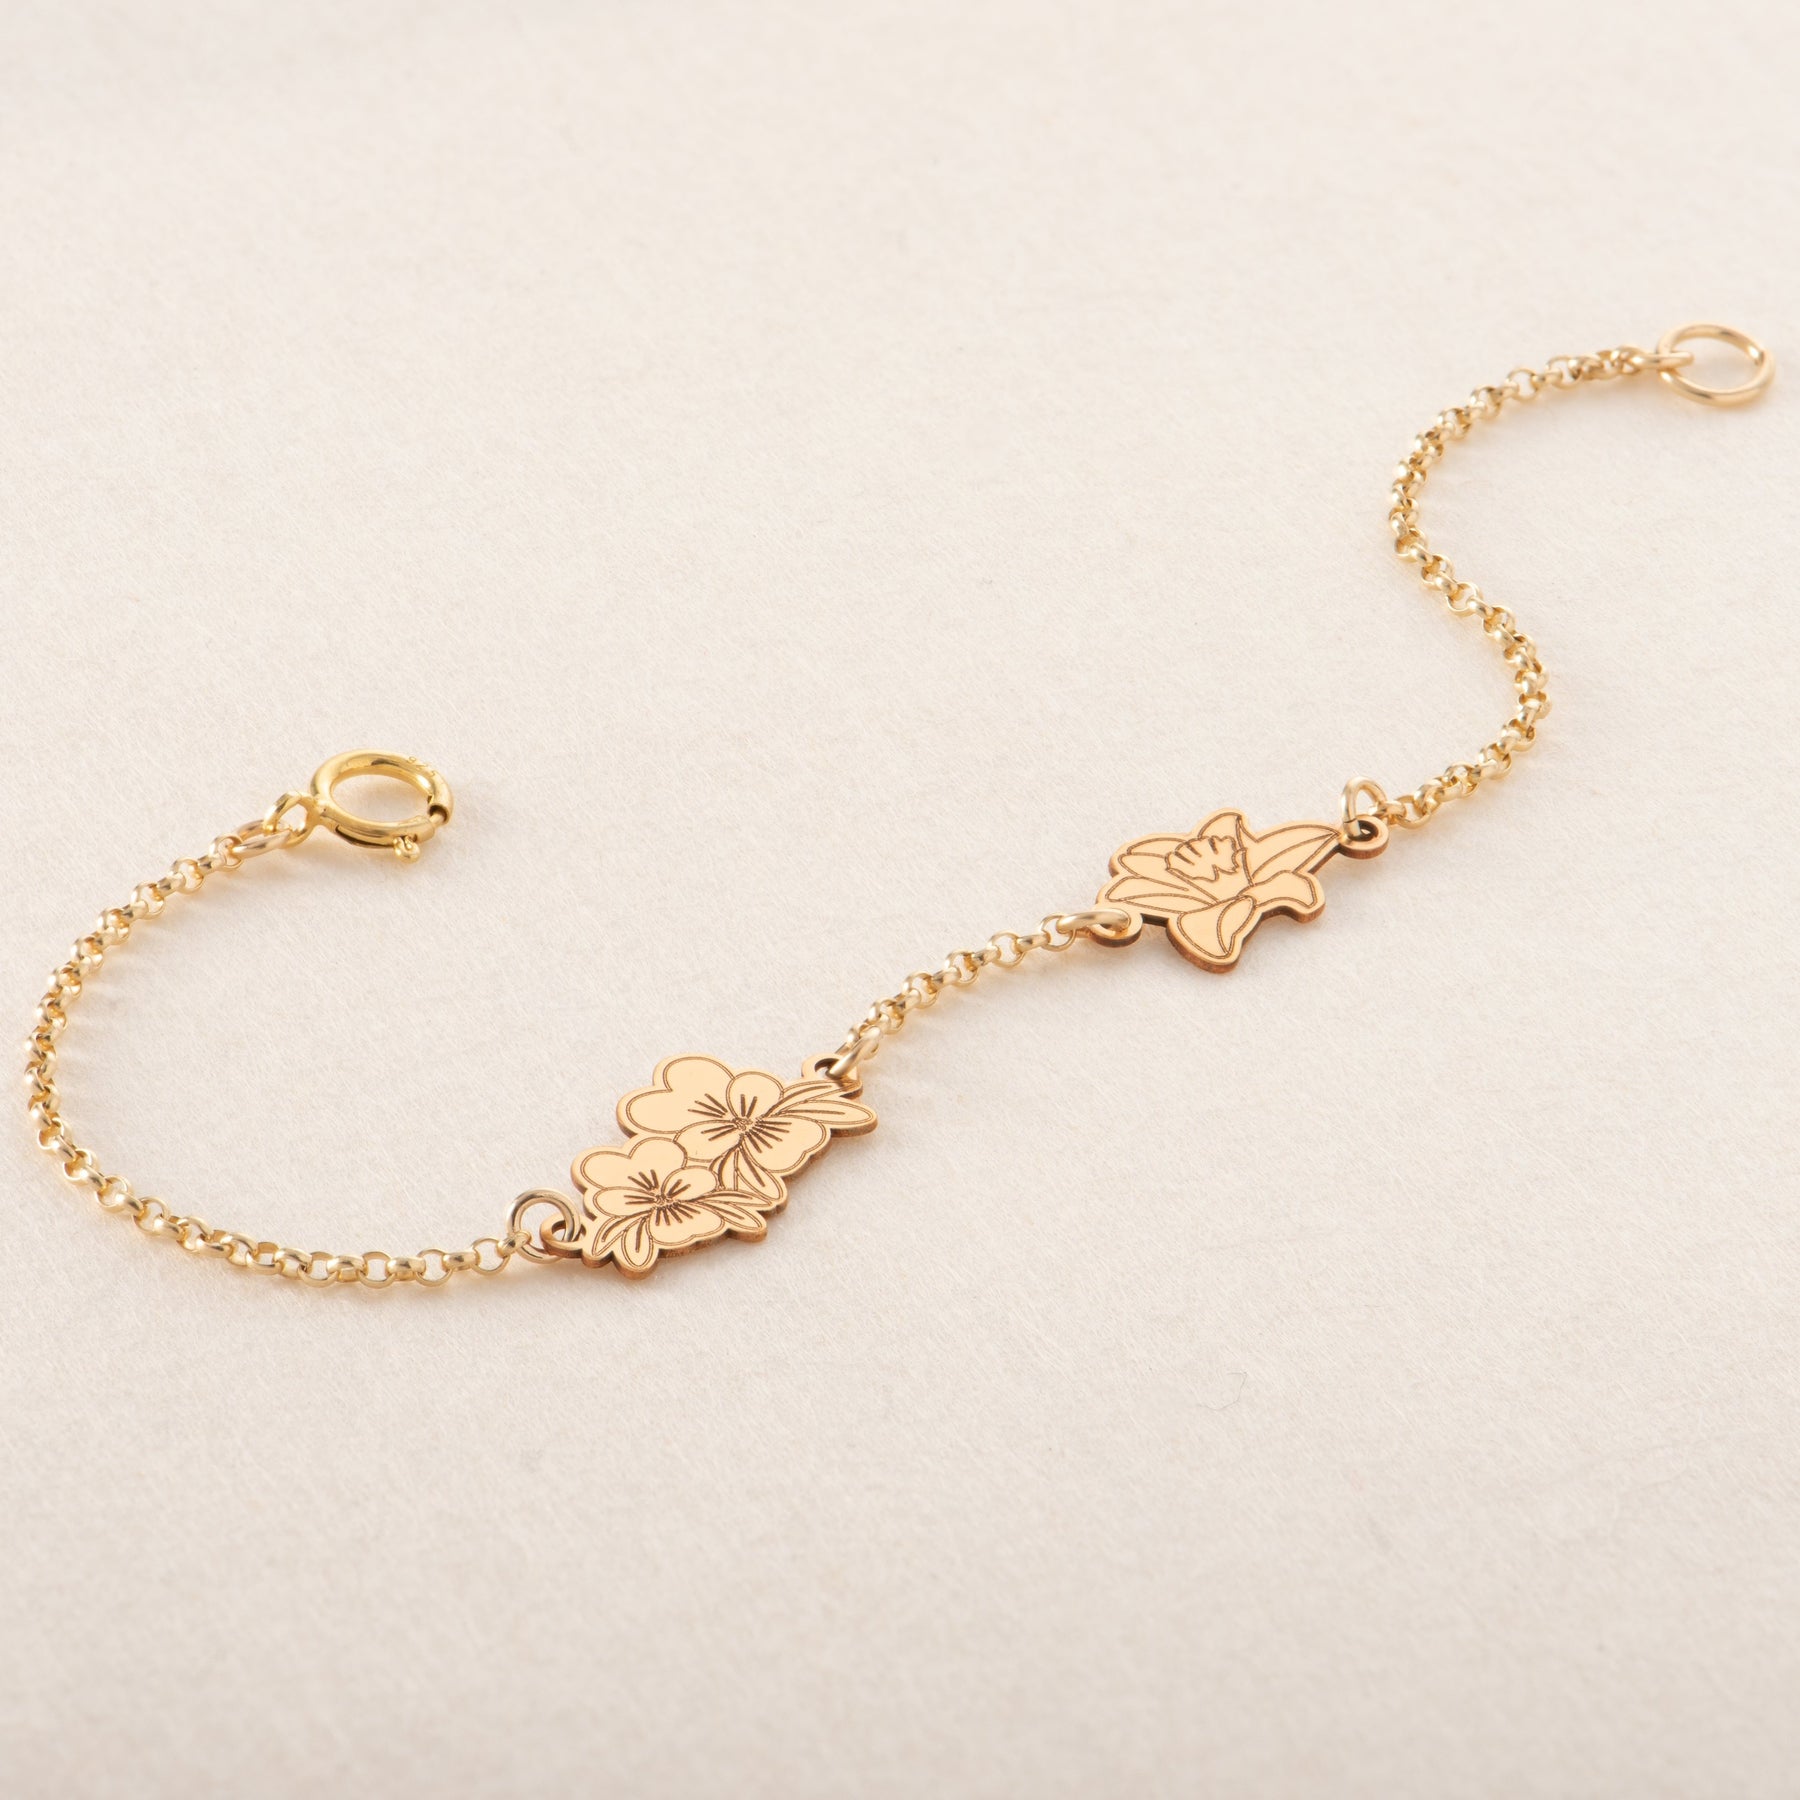 Birth Flower Bracelet 14K Gold Fill / 6-6.5